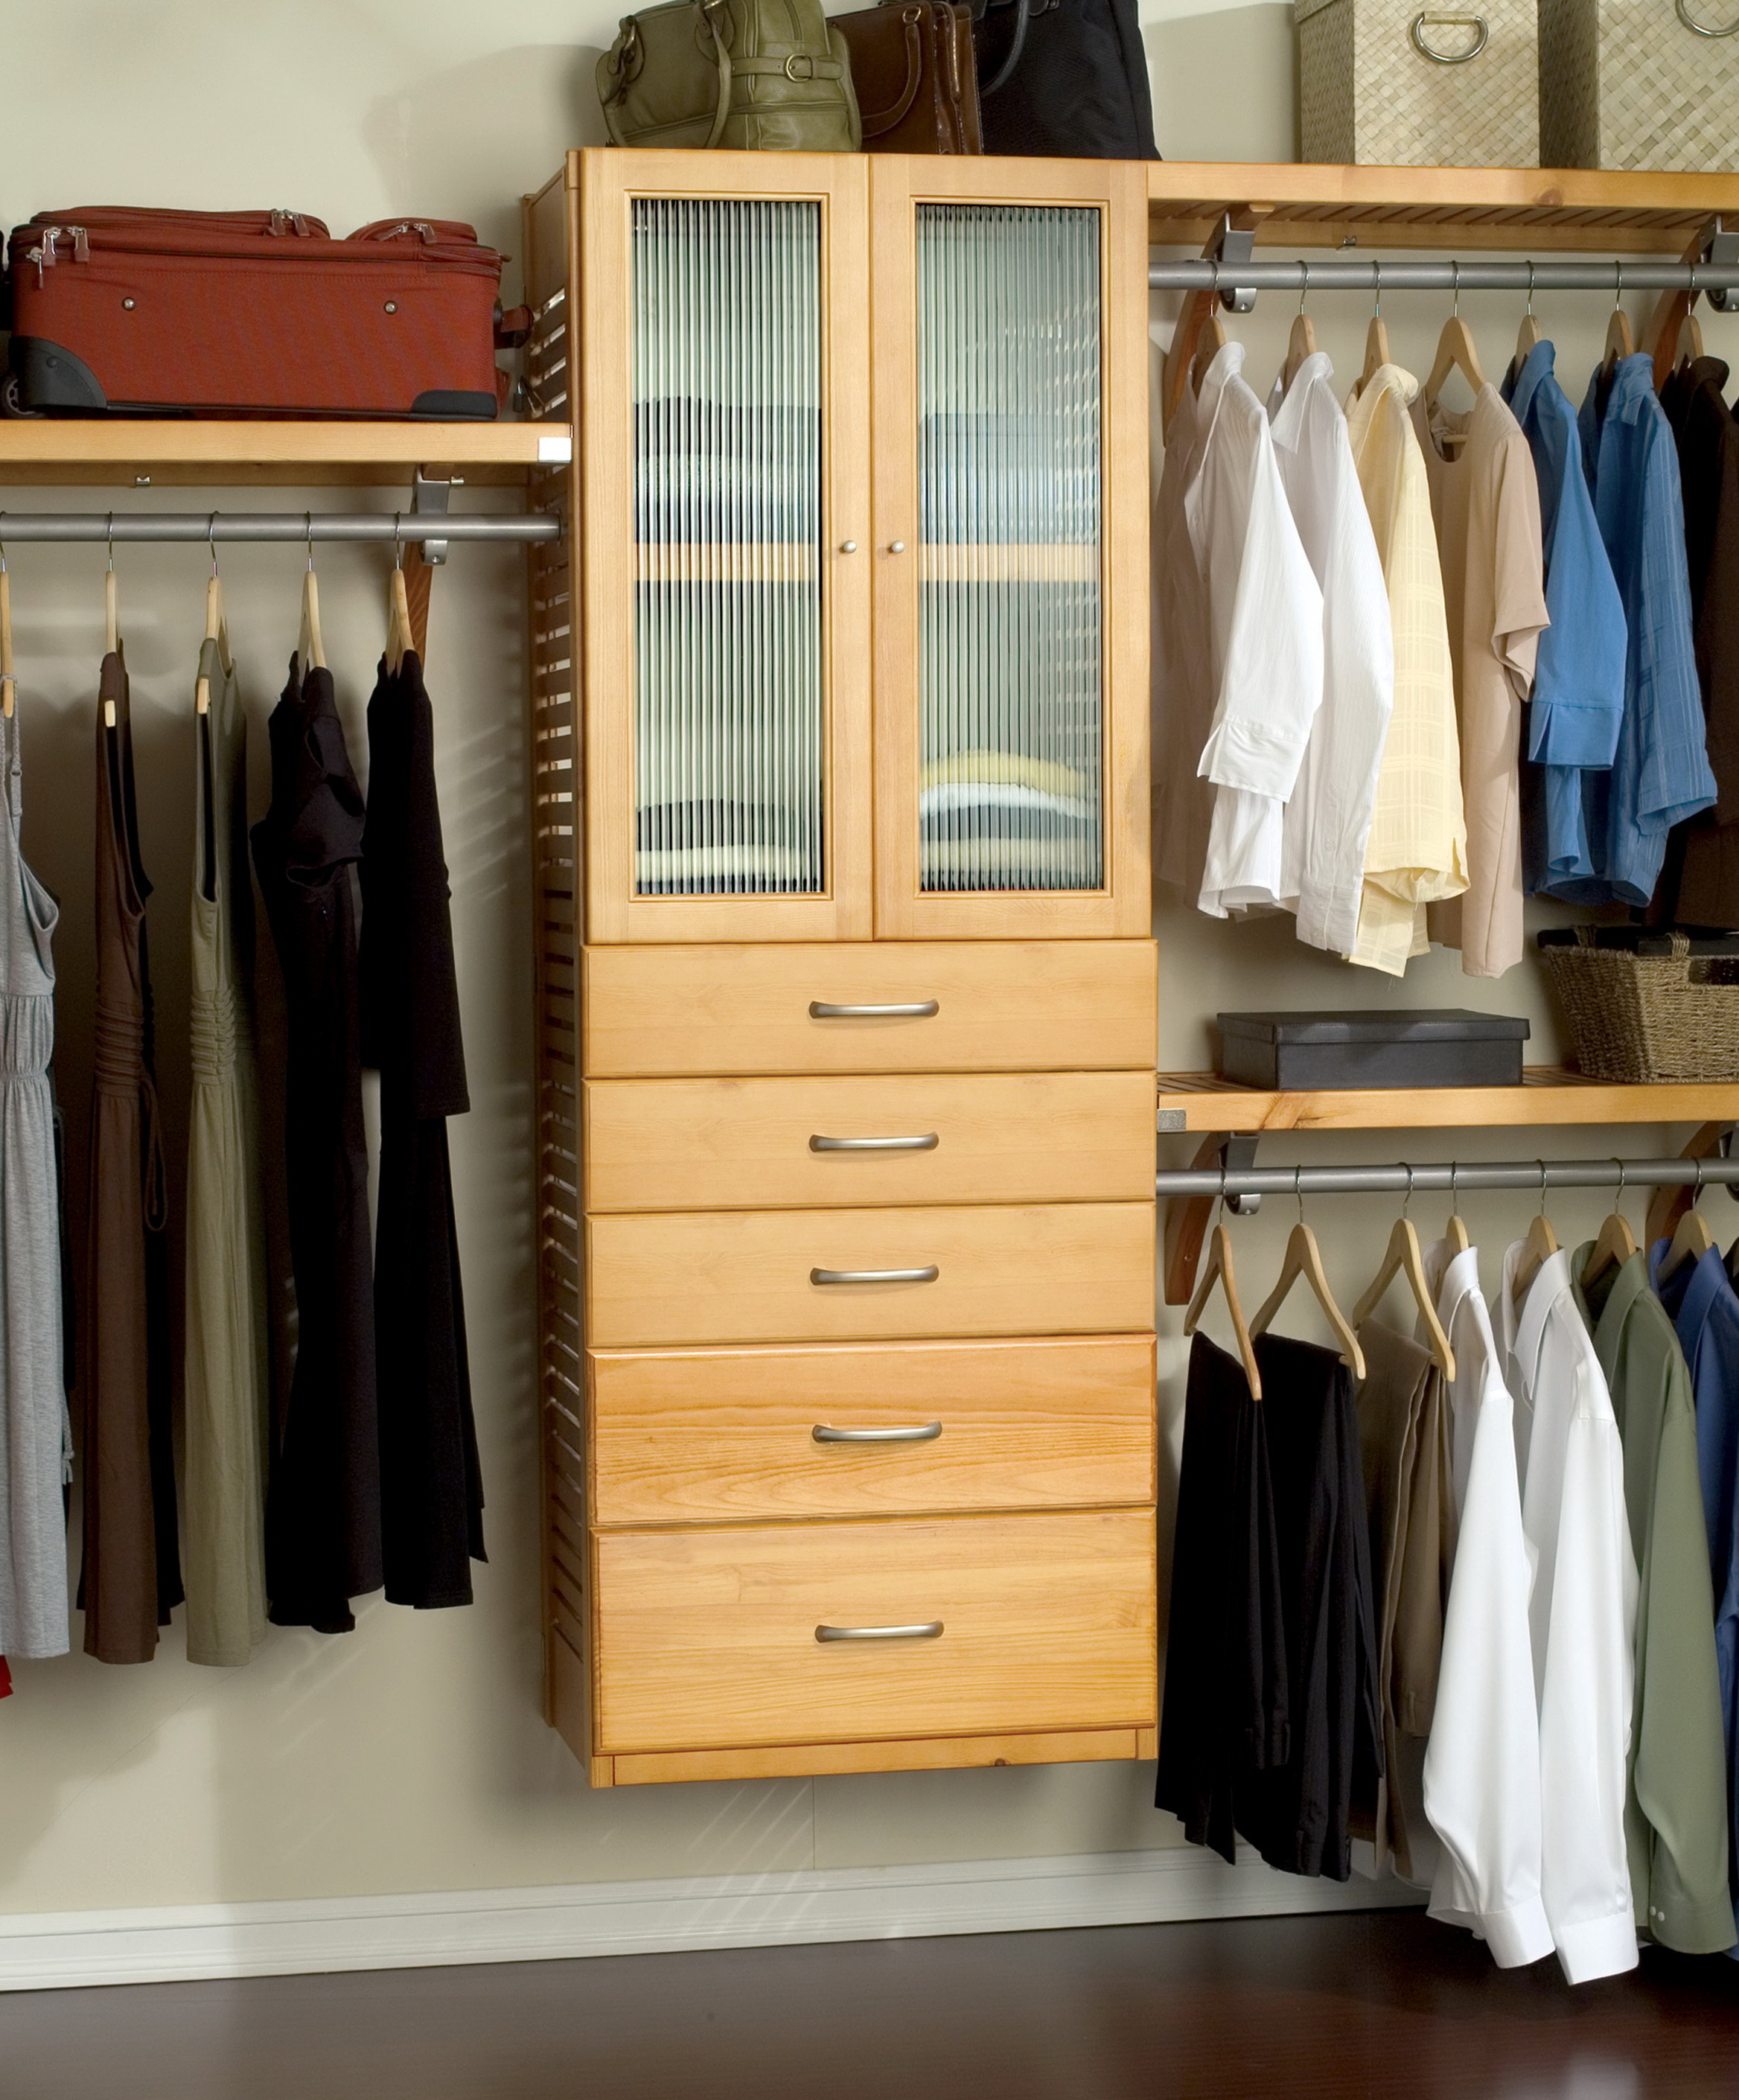 Best ideas about DIY Walk In Closet Organizer
. Save or Pin Diy Walk In Closet Organizers Now.